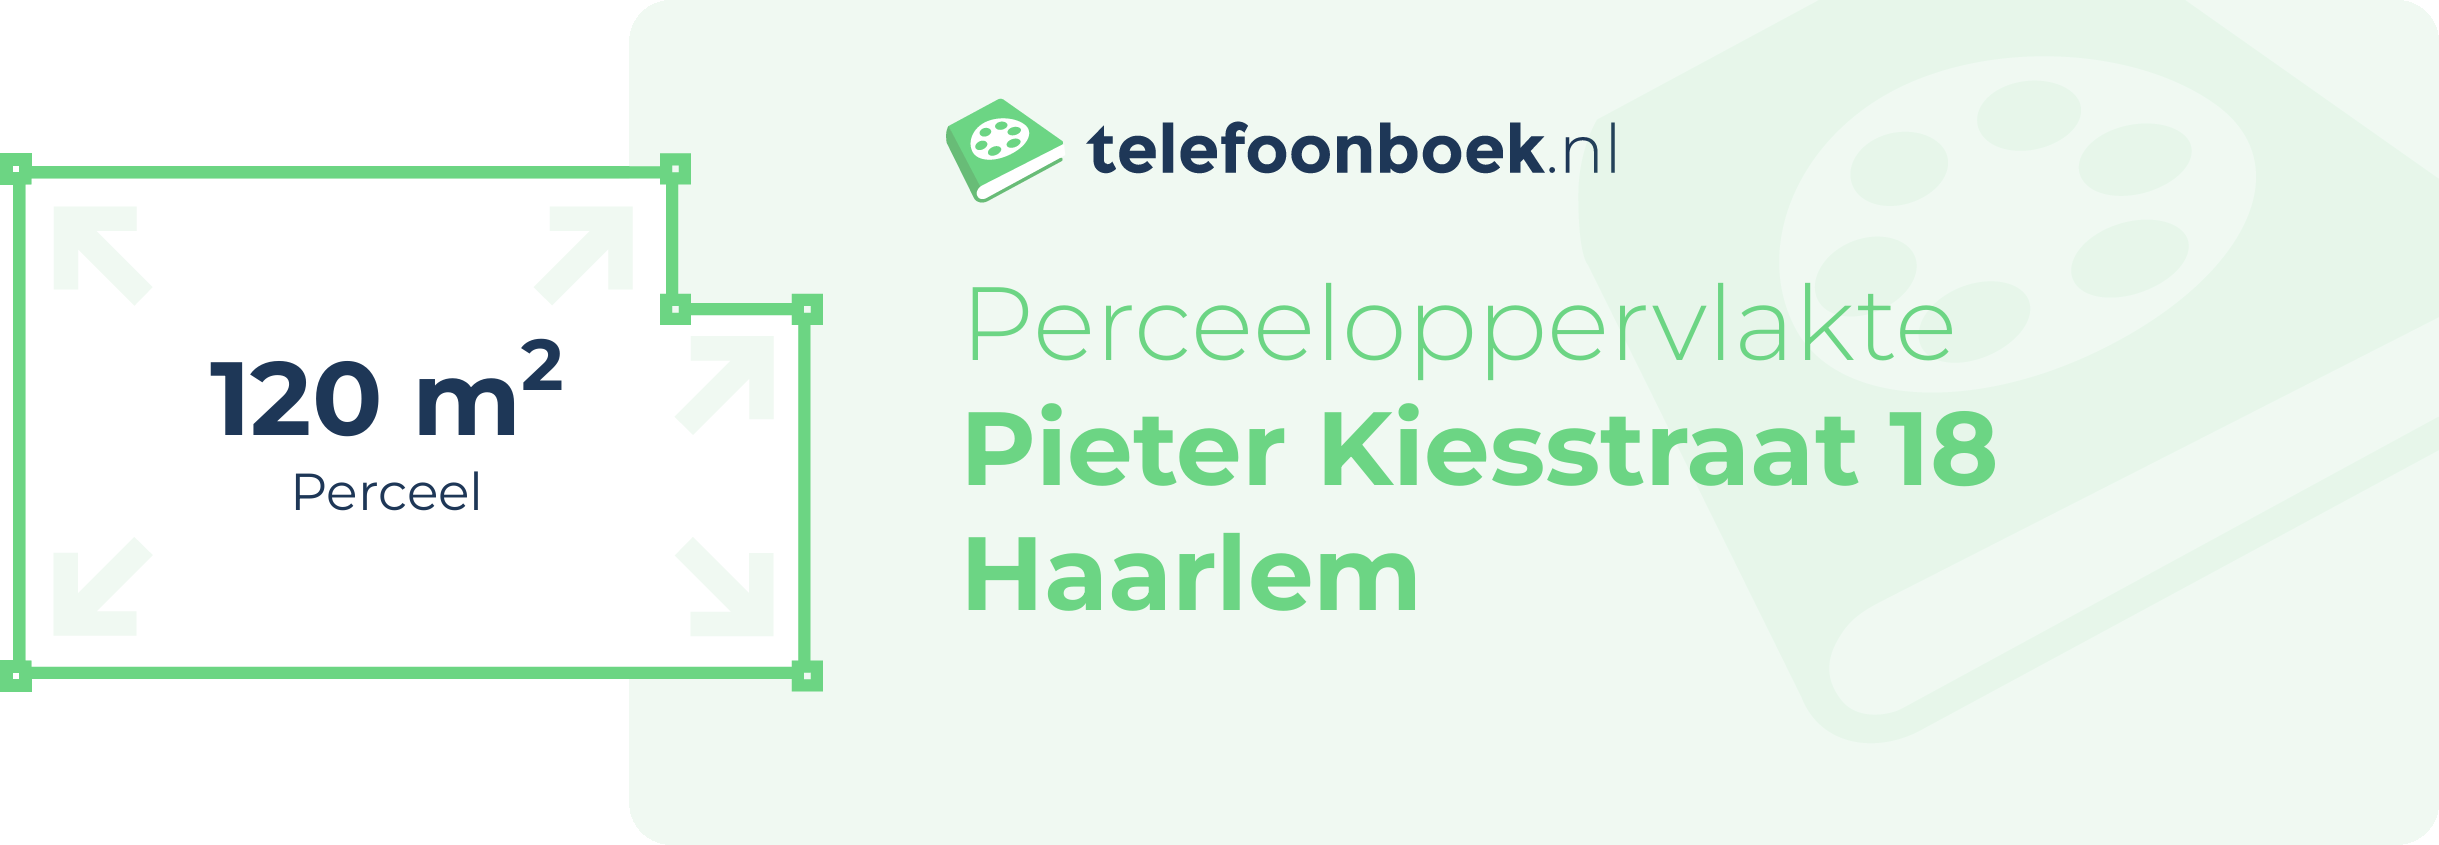 Perceeloppervlakte Pieter Kiesstraat 18 Haarlem